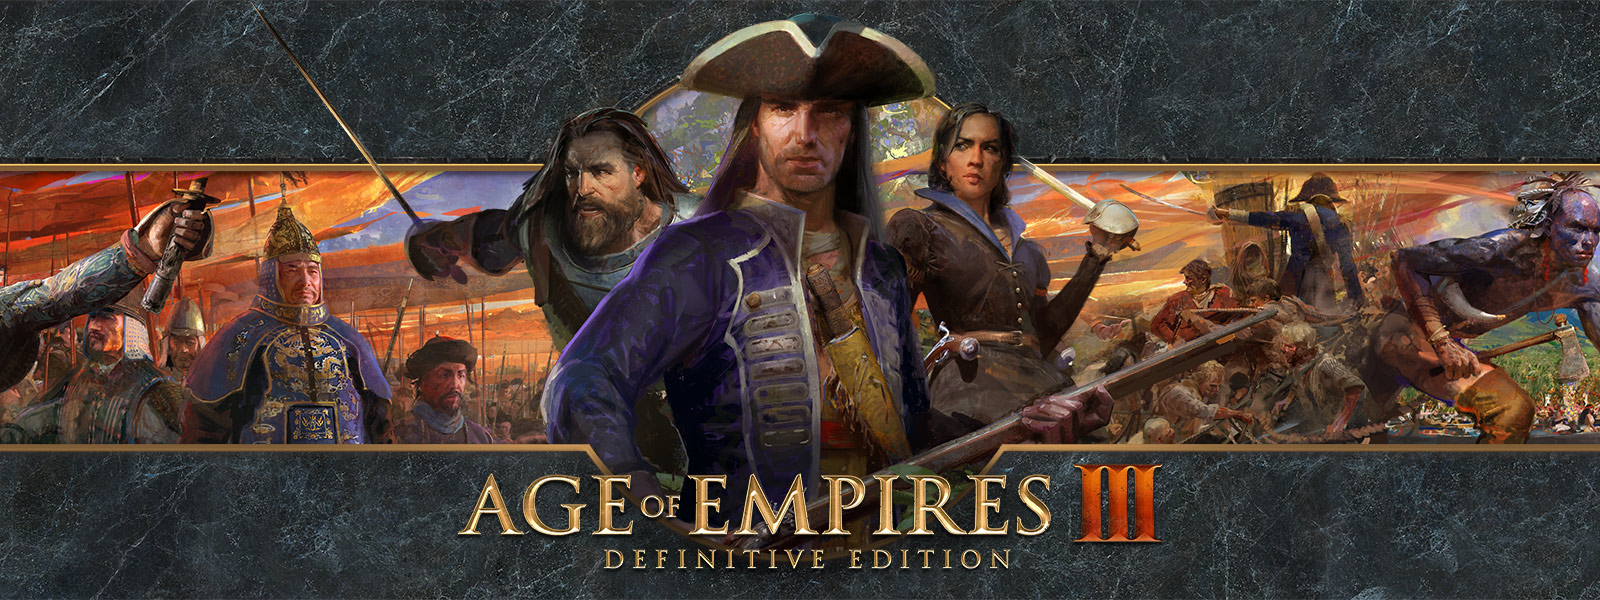 Age of Empires III: Definitive Edition-logo på en baggrund med krigsledere og deres hære